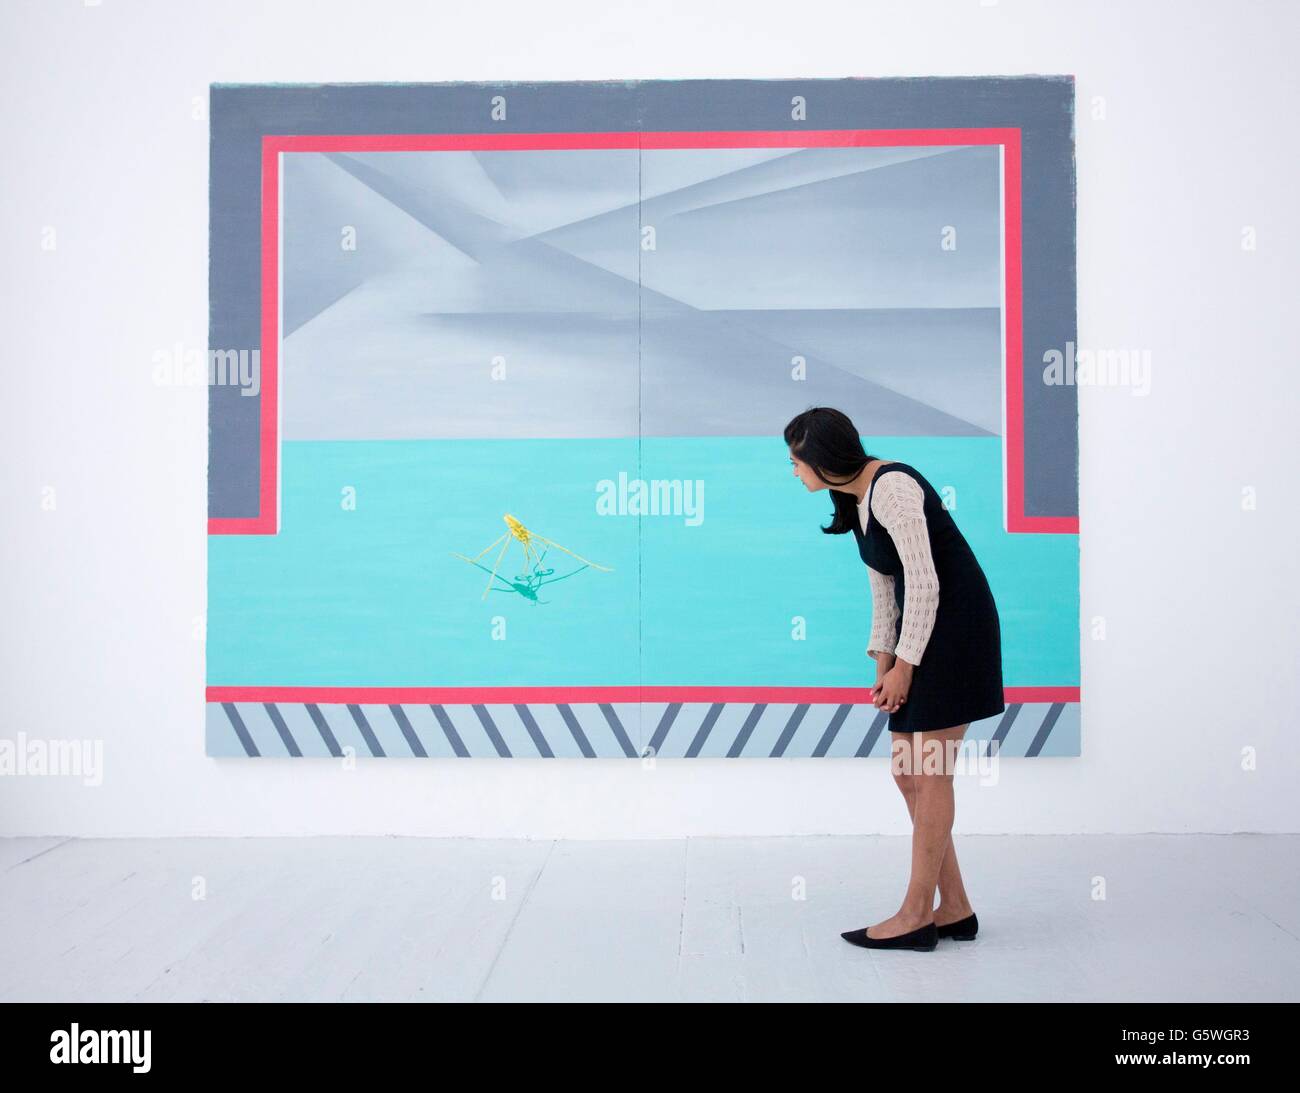 Une femme voit Infinity Pool (vous avez attrapé le bogue et l'avez gardé en chambre froide) par l'artiste Rian Coughlan qui est exposé à la Royal Academy of Arts dans le centre de Londres, dans le cadre de l'exposition annuelle des œuvres d'artistes diplômés de la Royal Academy of Arts Banque D'Images